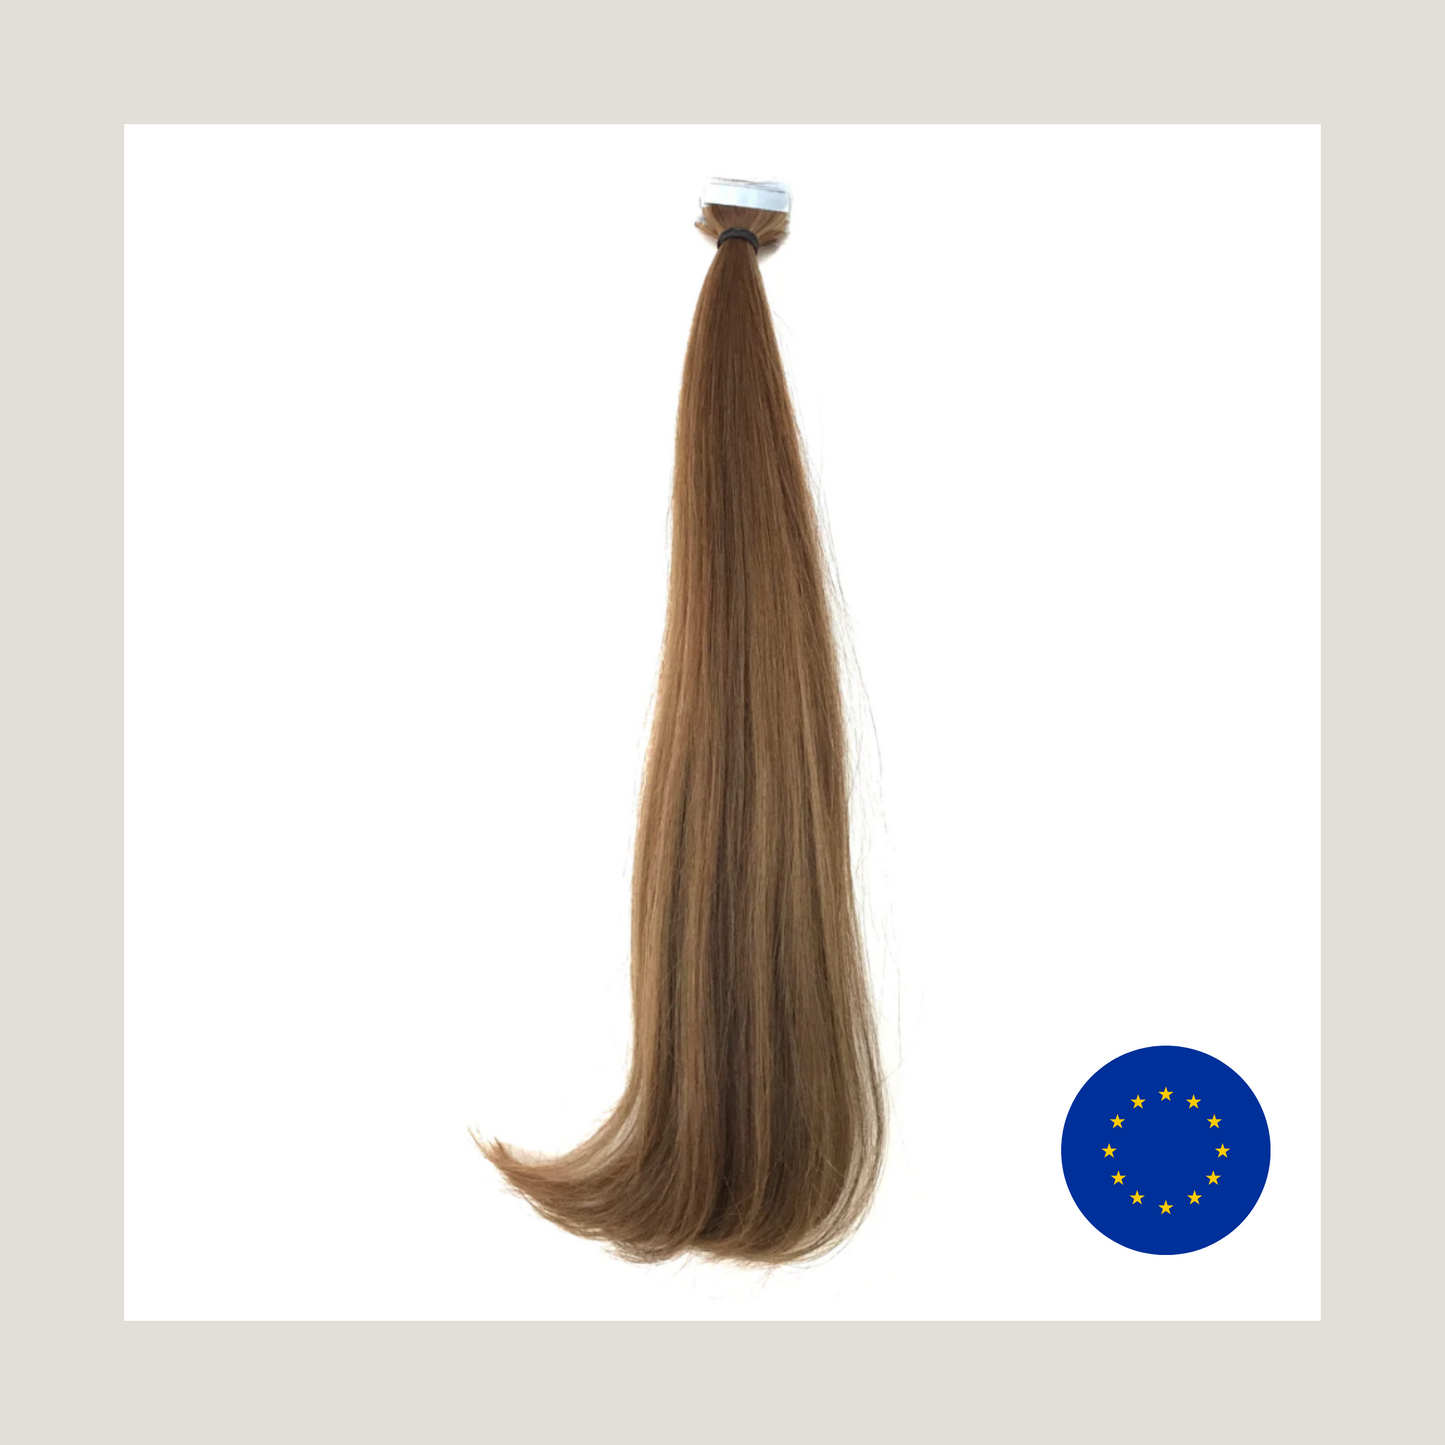 שיער אנושי של רמי בתולה אירופאי מצוייר כפול, תוספות שיער בדבק